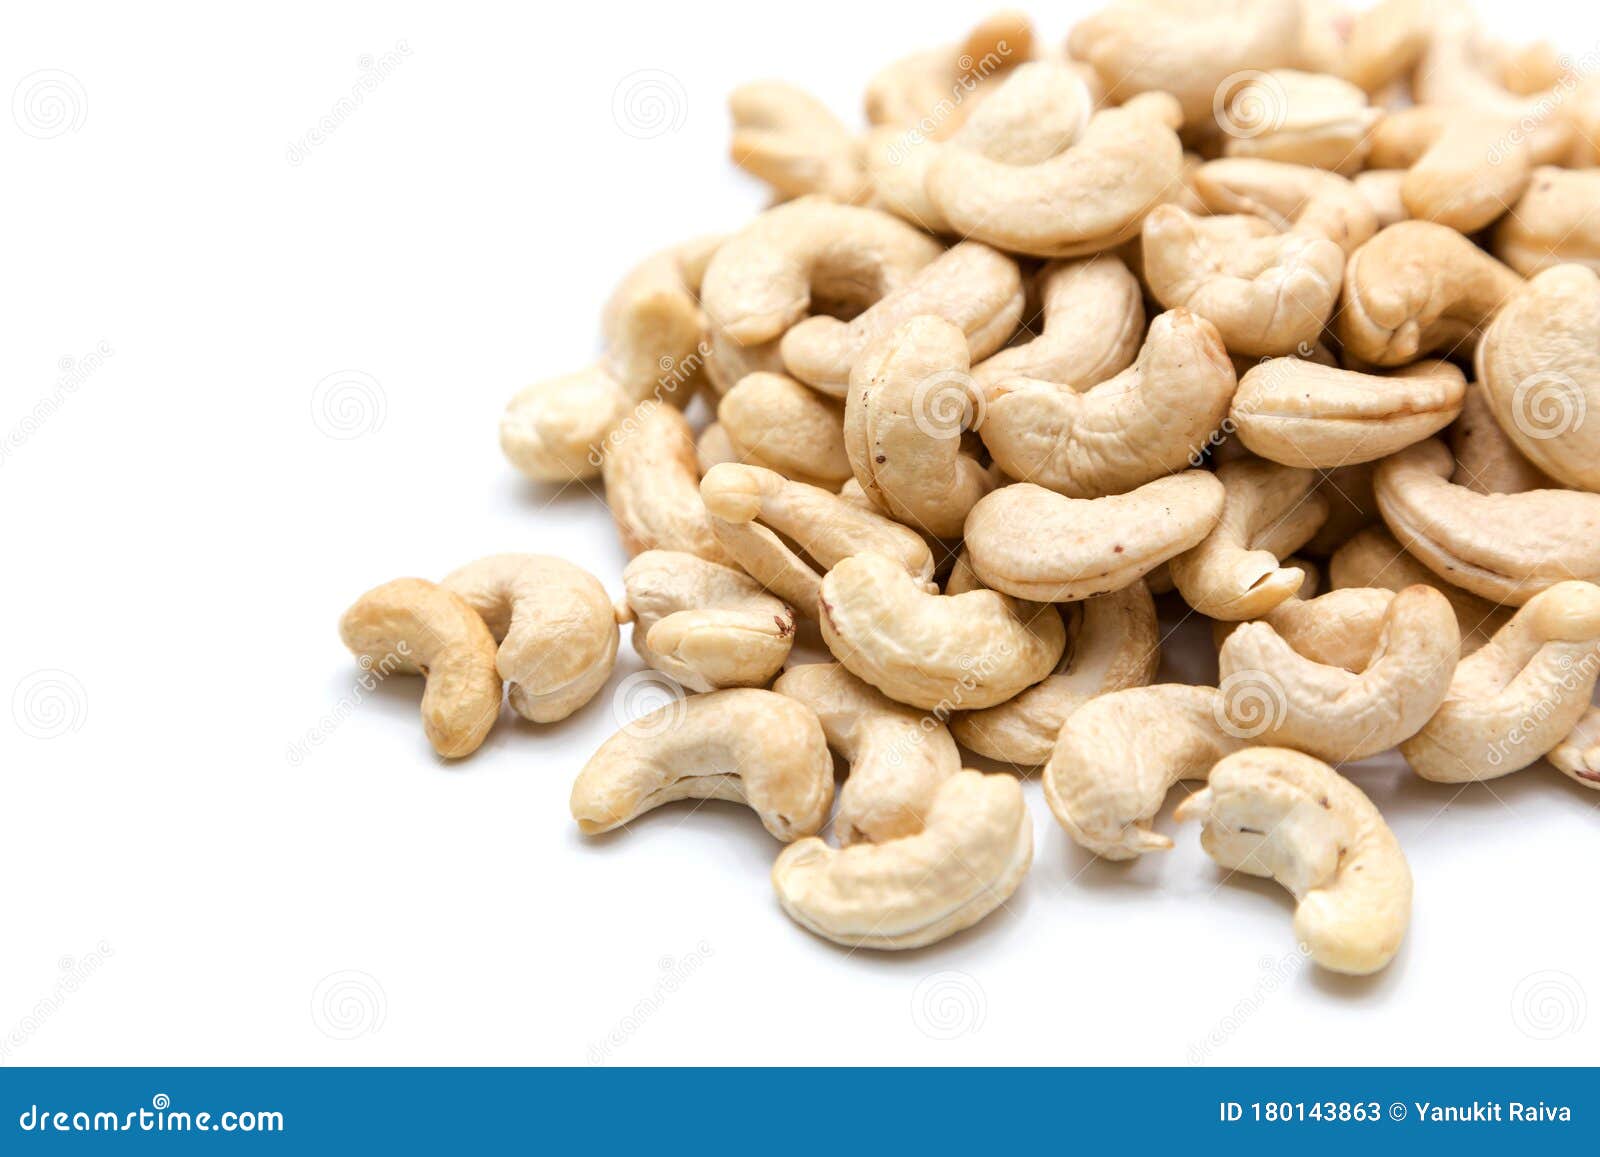 Cashew Nut On Isolated Background Stock Image - Image of ...